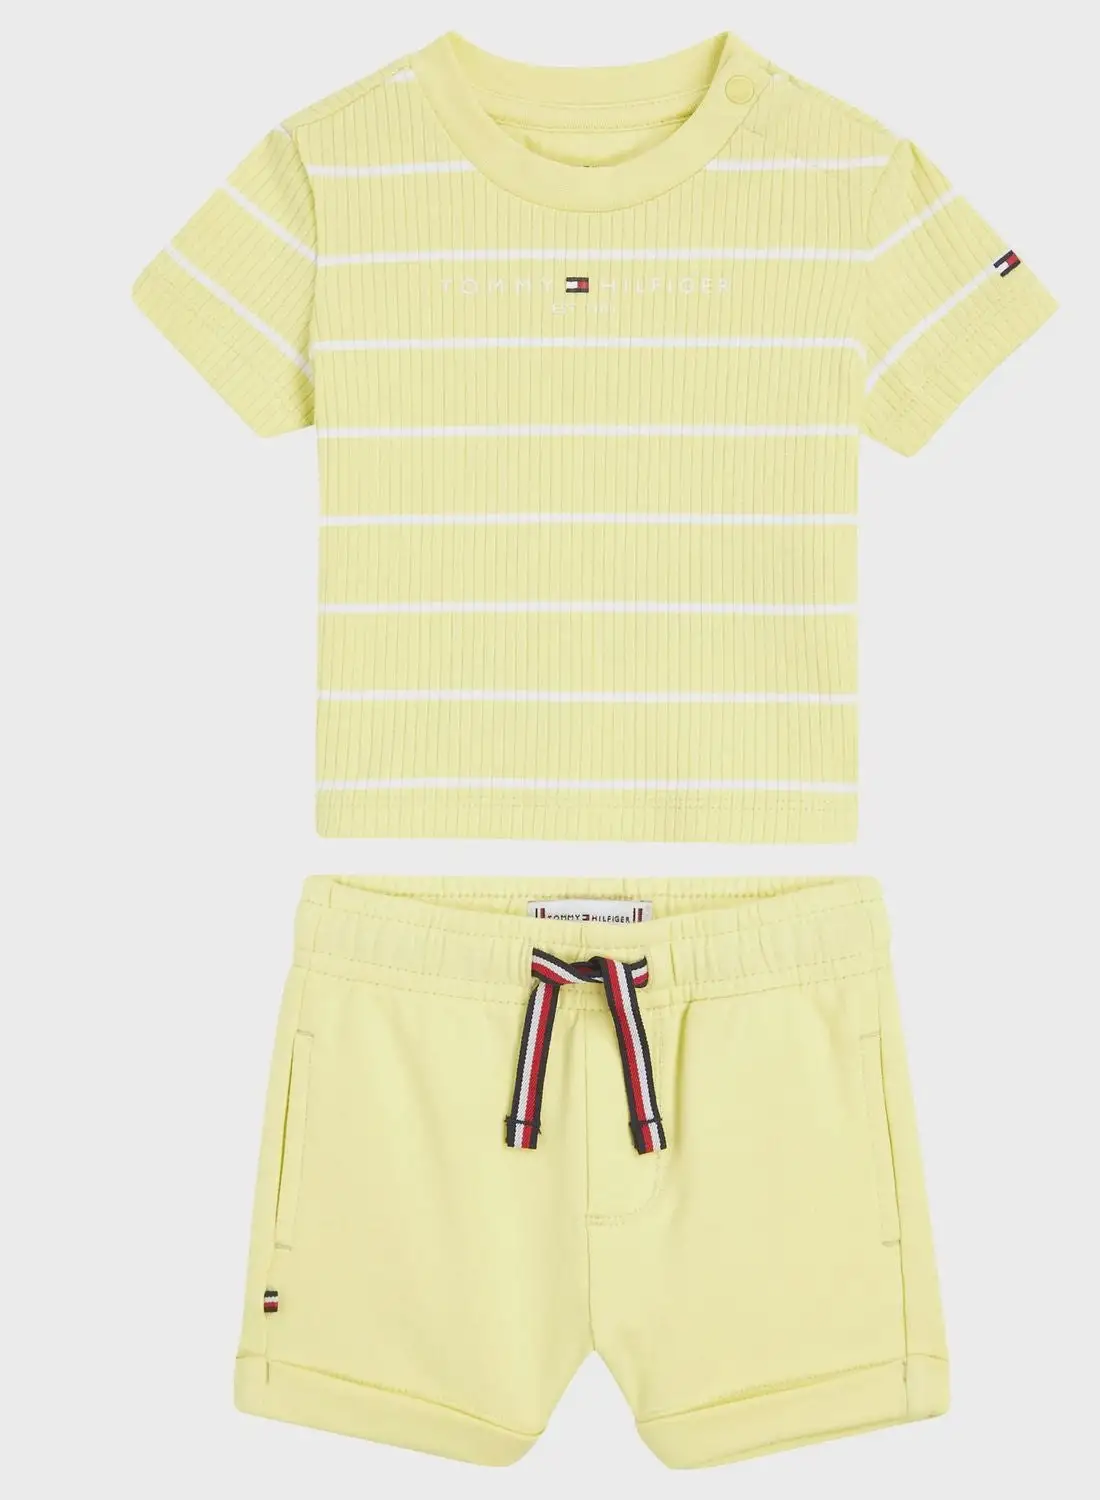 TOMMY HILFIGER Infant Striped T-Shirt & Shorts Set